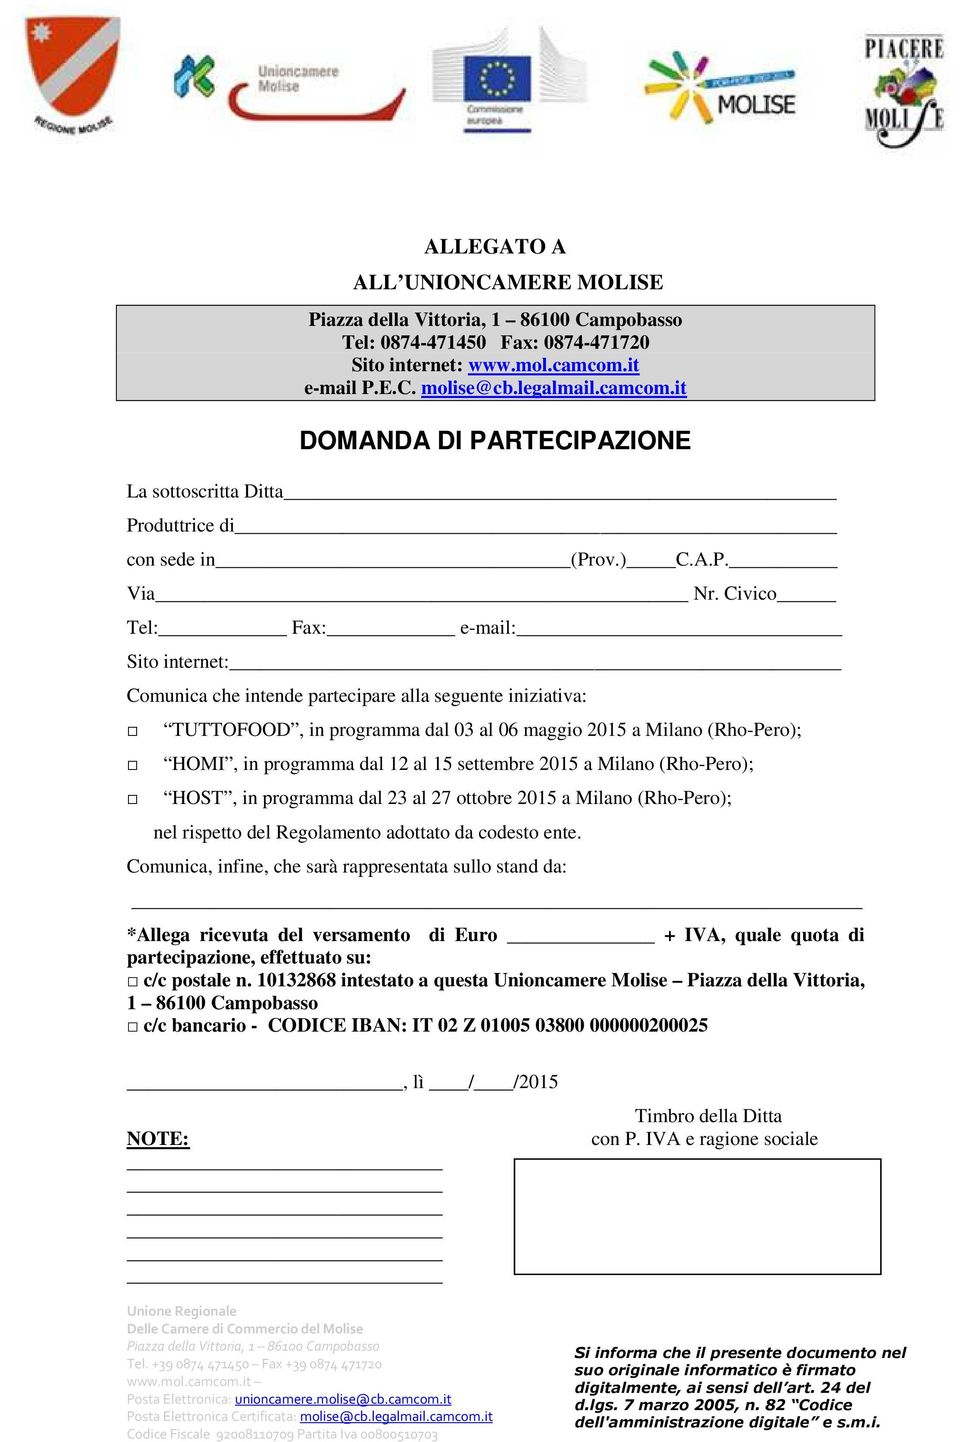 Civico Tel: Fax: e-mail:_ Sito internet: Comunica che intende partecipare alla seguente iniziativa: TUTTOFOOD, in programma dal 03 al 06 maggio 2015 a Milano (Rho-Pero); HOMI, in programma dal 12 al